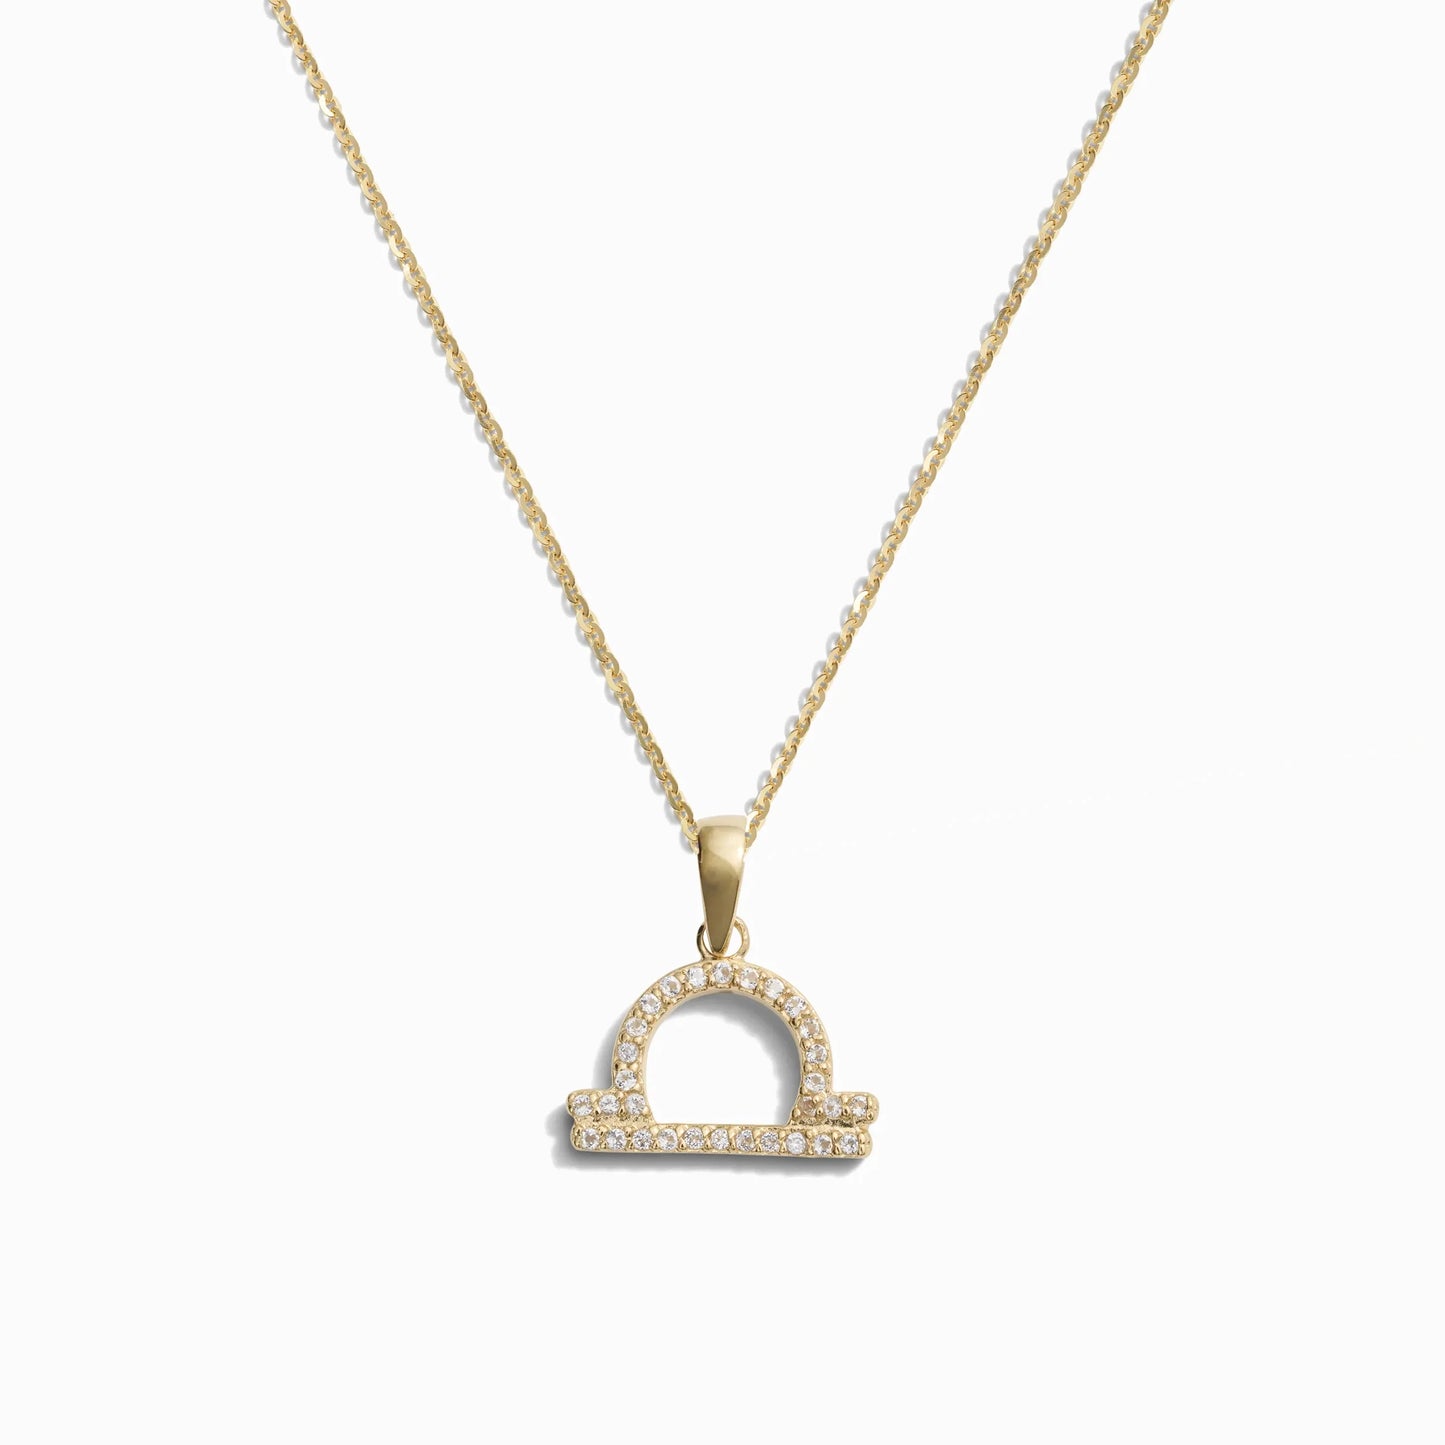 Zodiac Gemstone Necklace by Awe Inspired